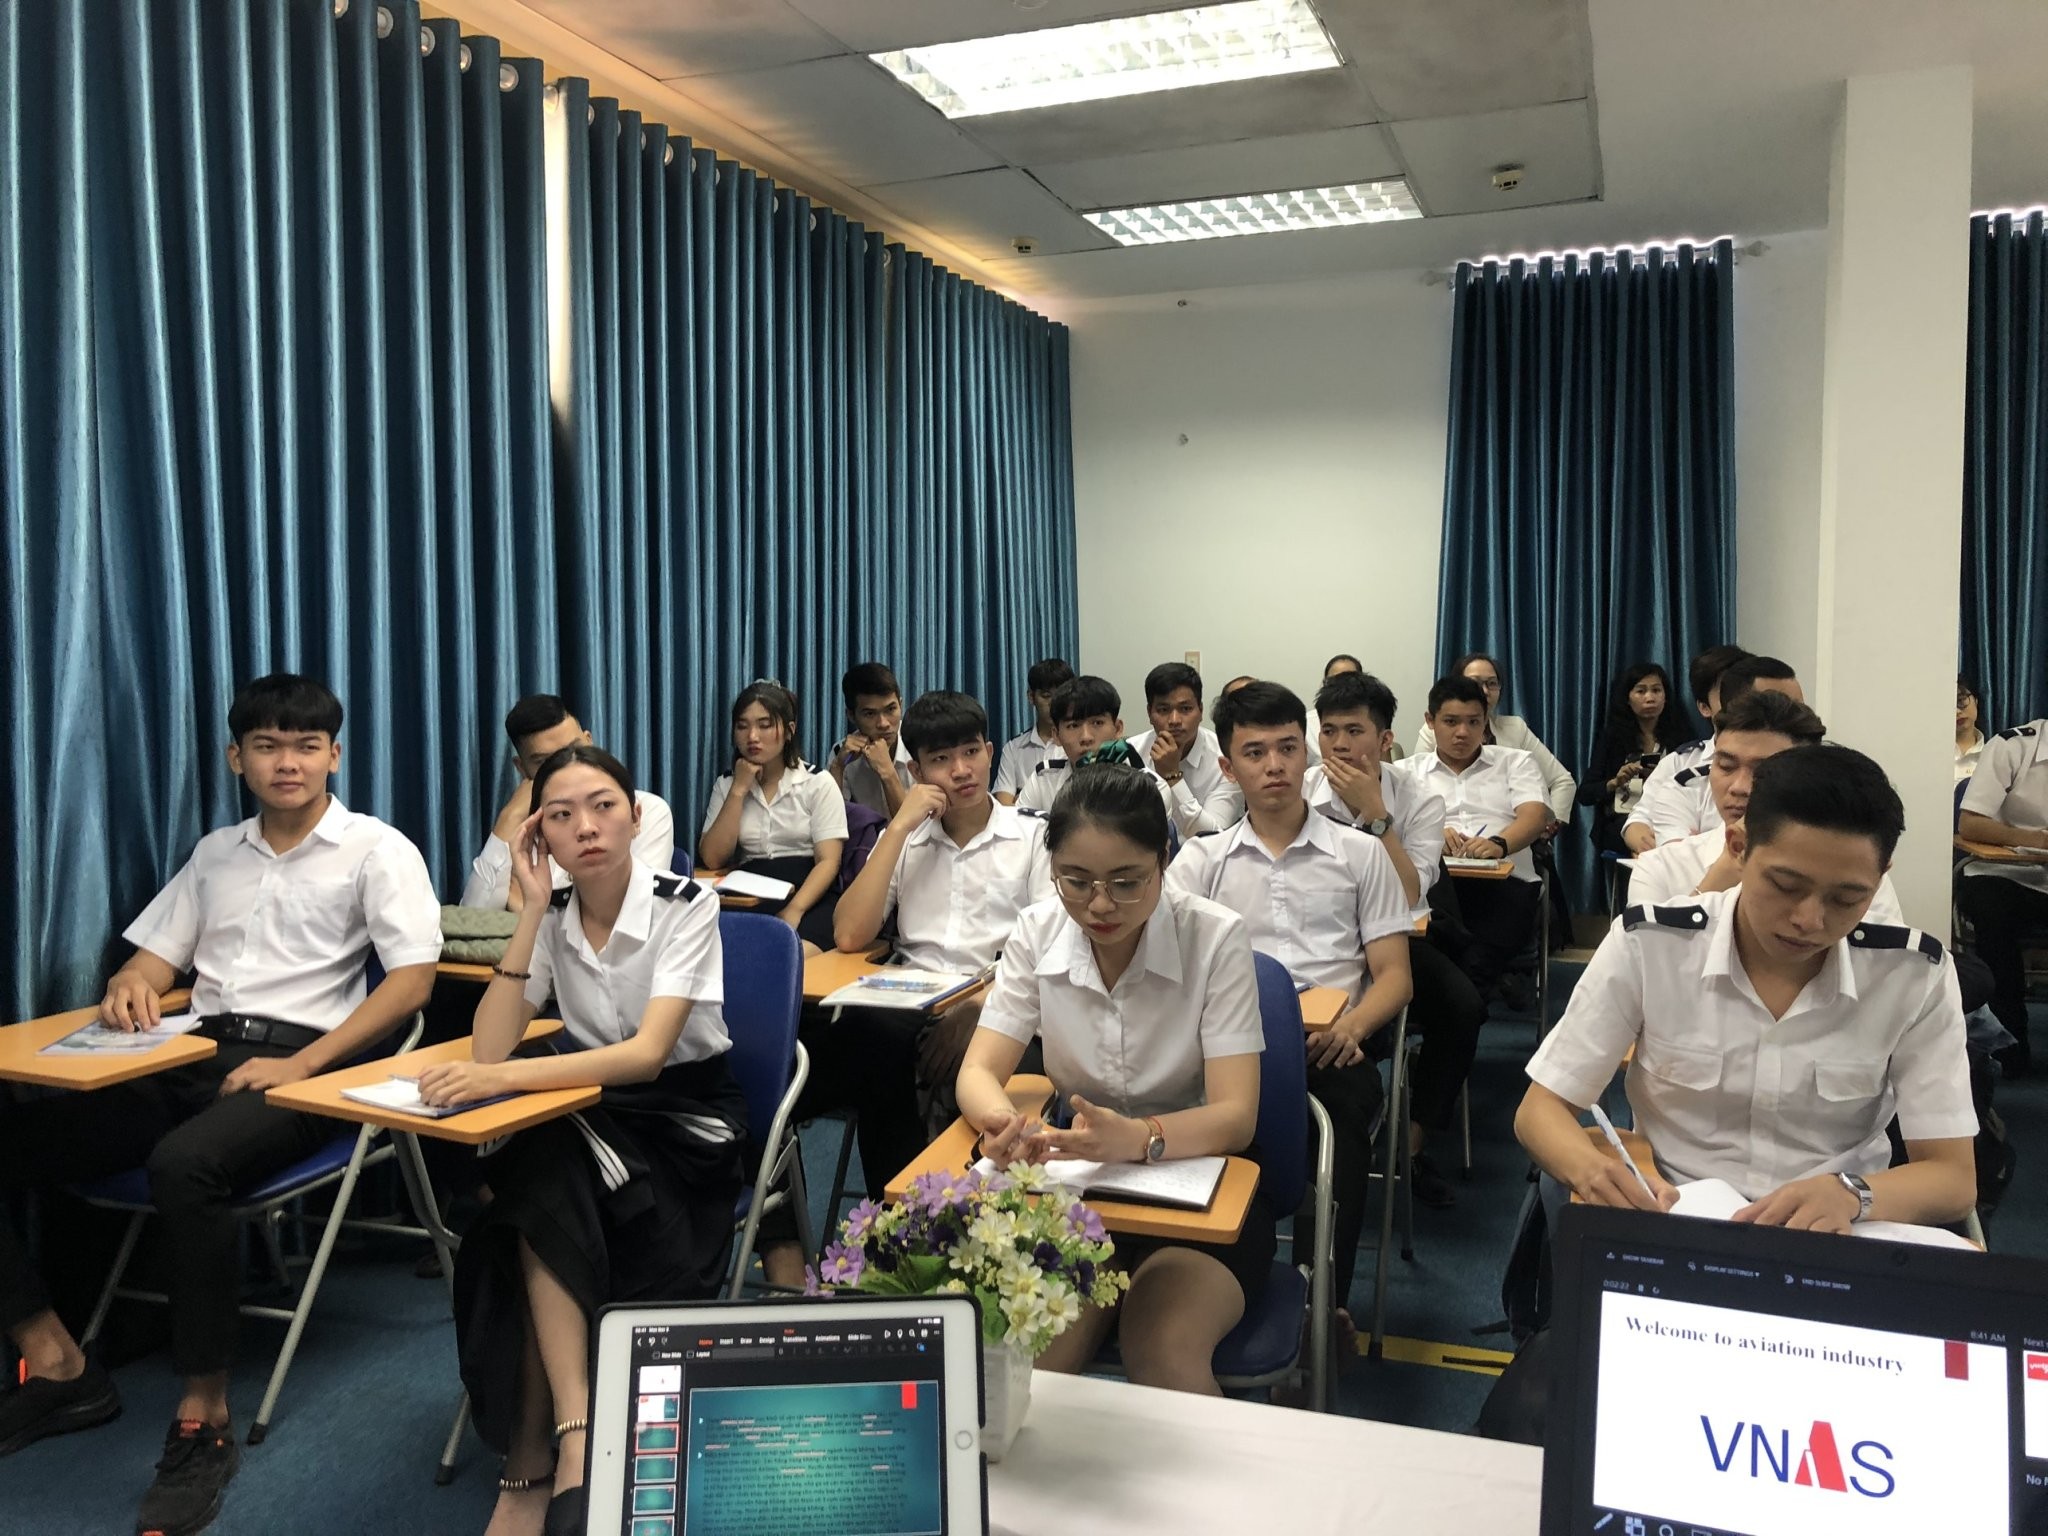 TMong muốn làm việc trong ngành Hàng không tại Việt Nam thì nên bắt đầu từ đâu?